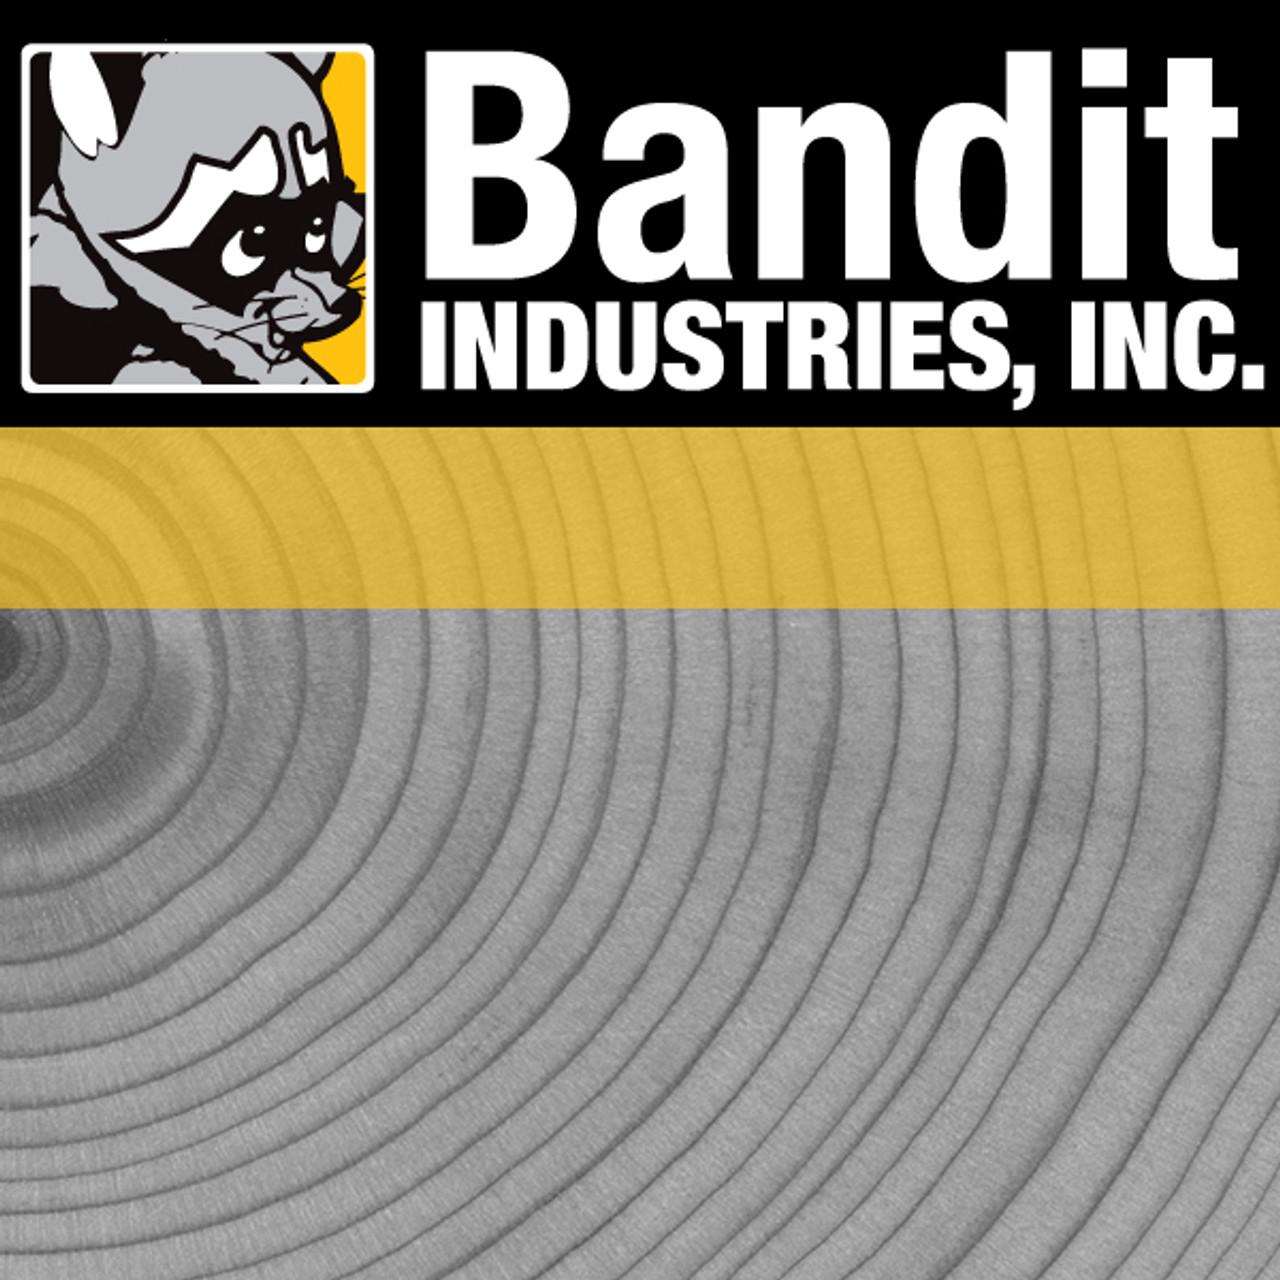 995-0000-07: BANDIT REAR - CHIPPER BASE